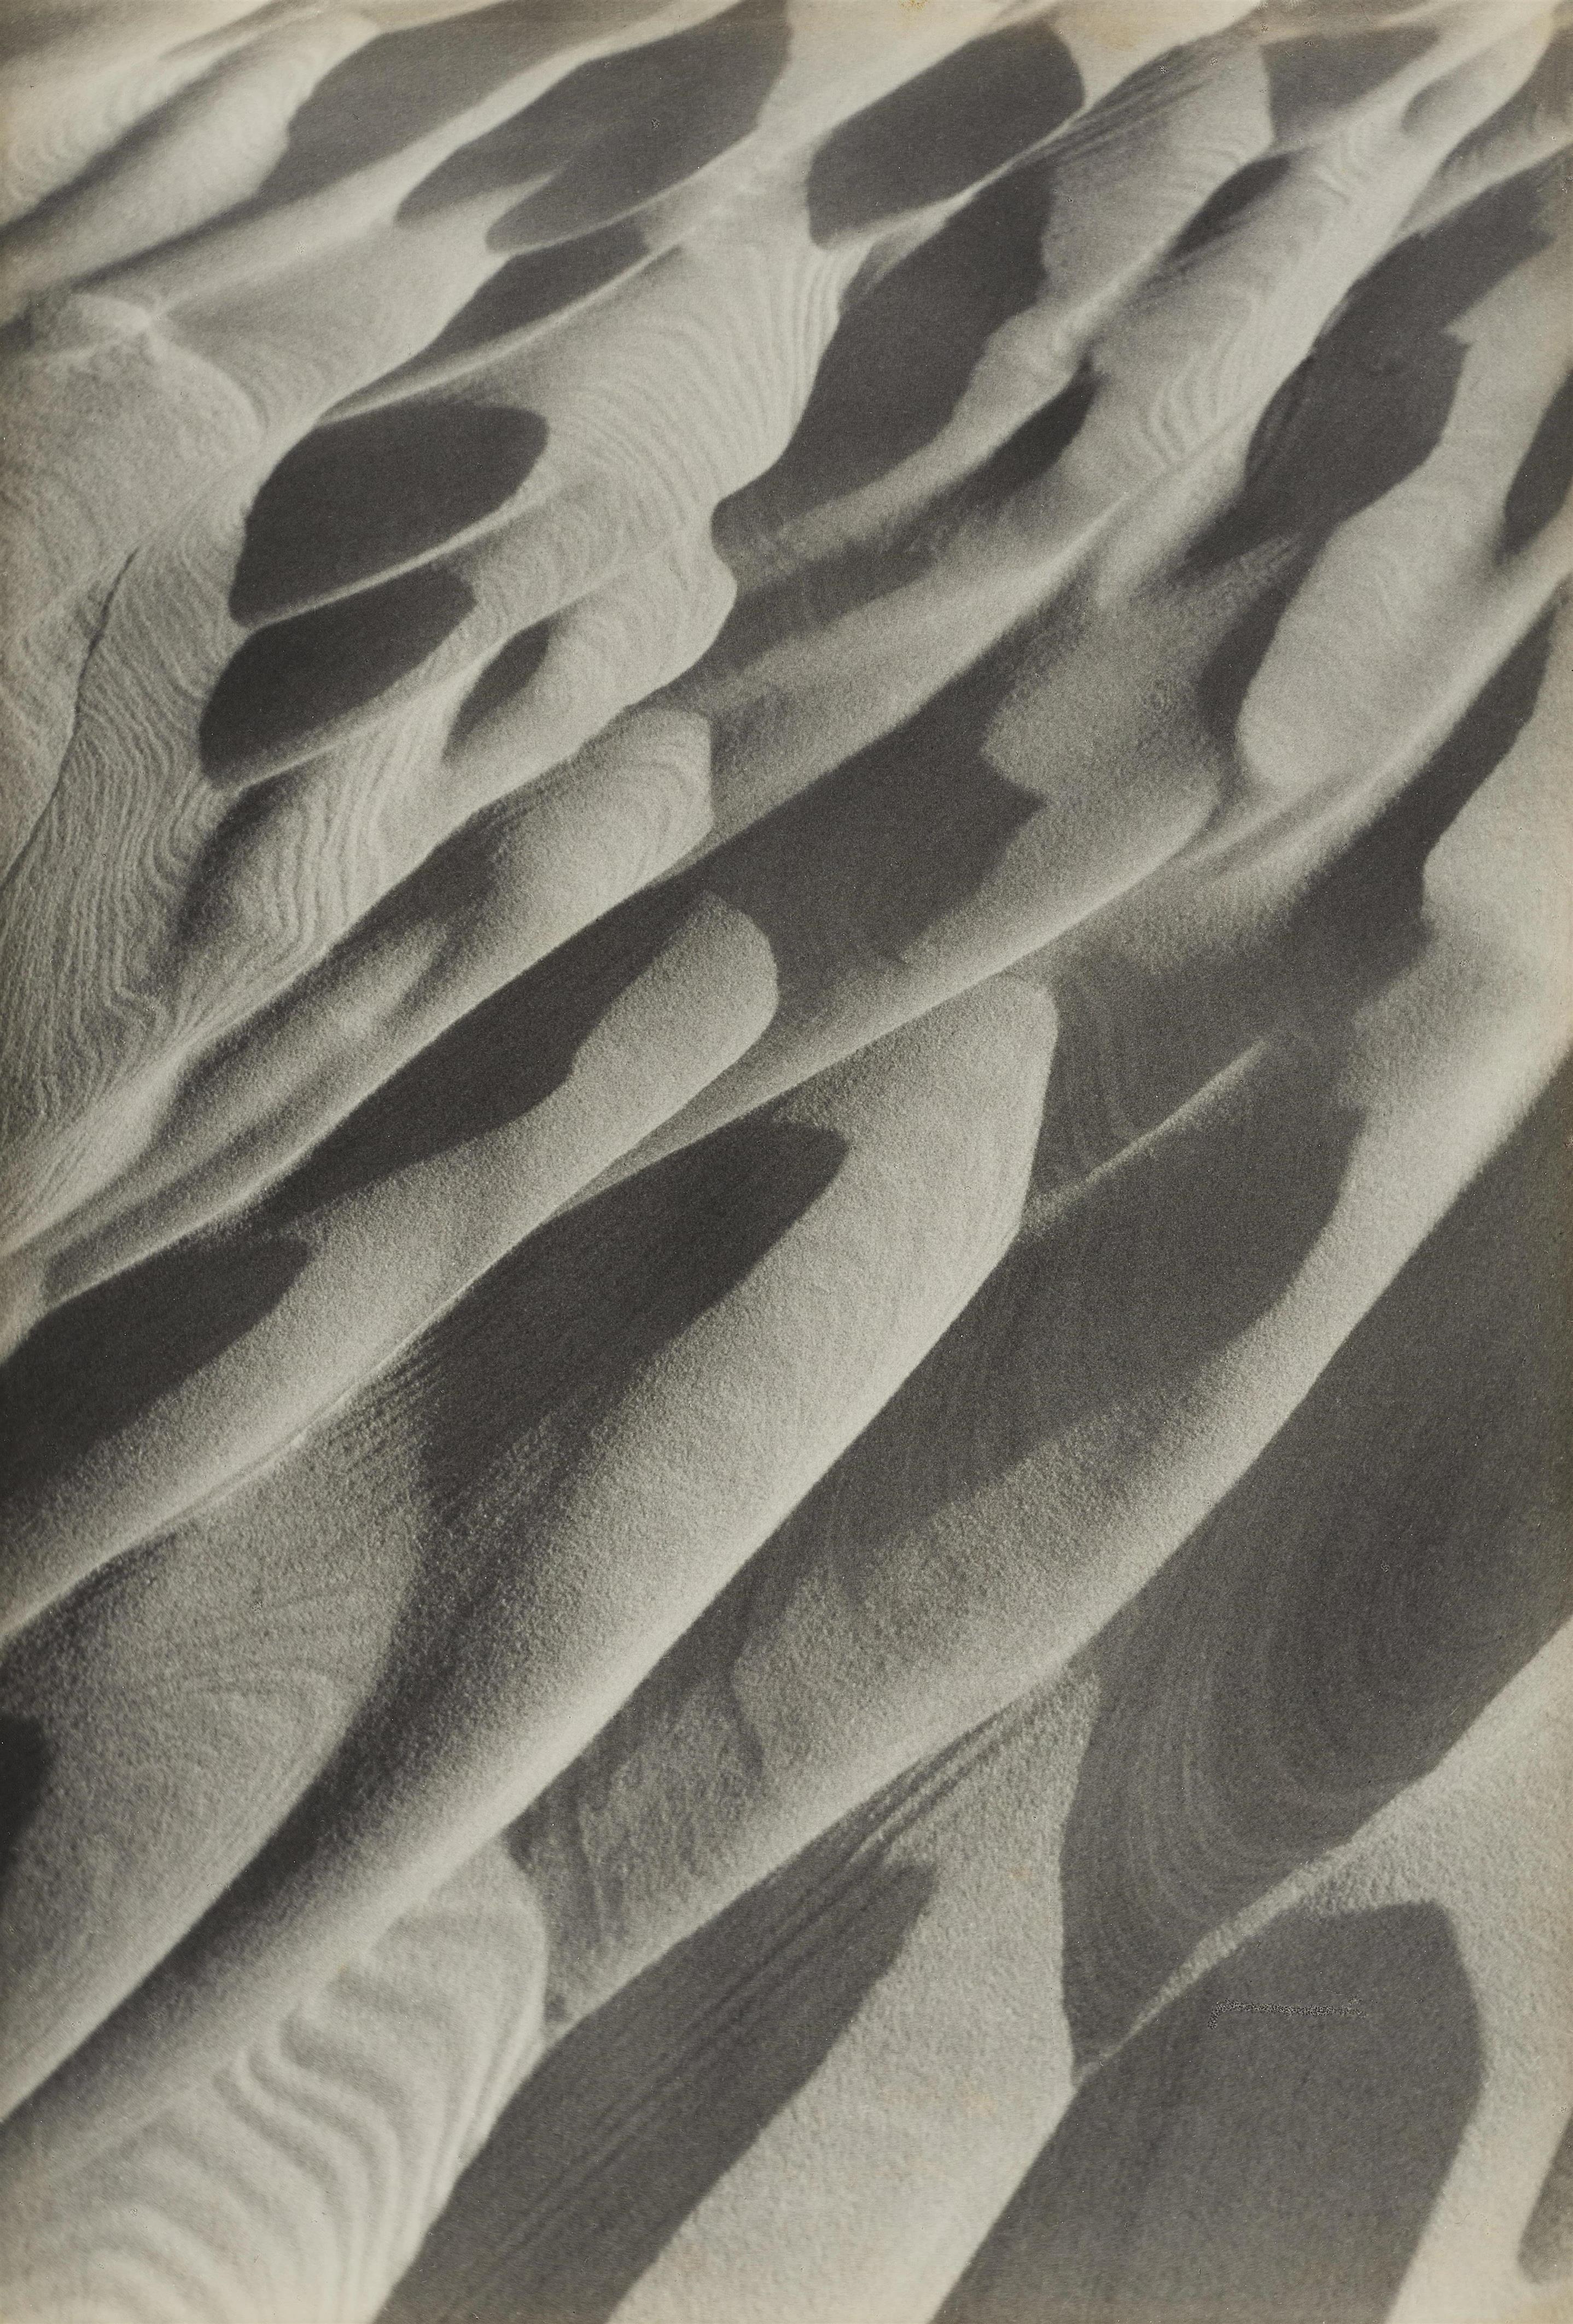 Alfred Ehrhardt - Sandformen, Kurische Nehrung - image-1